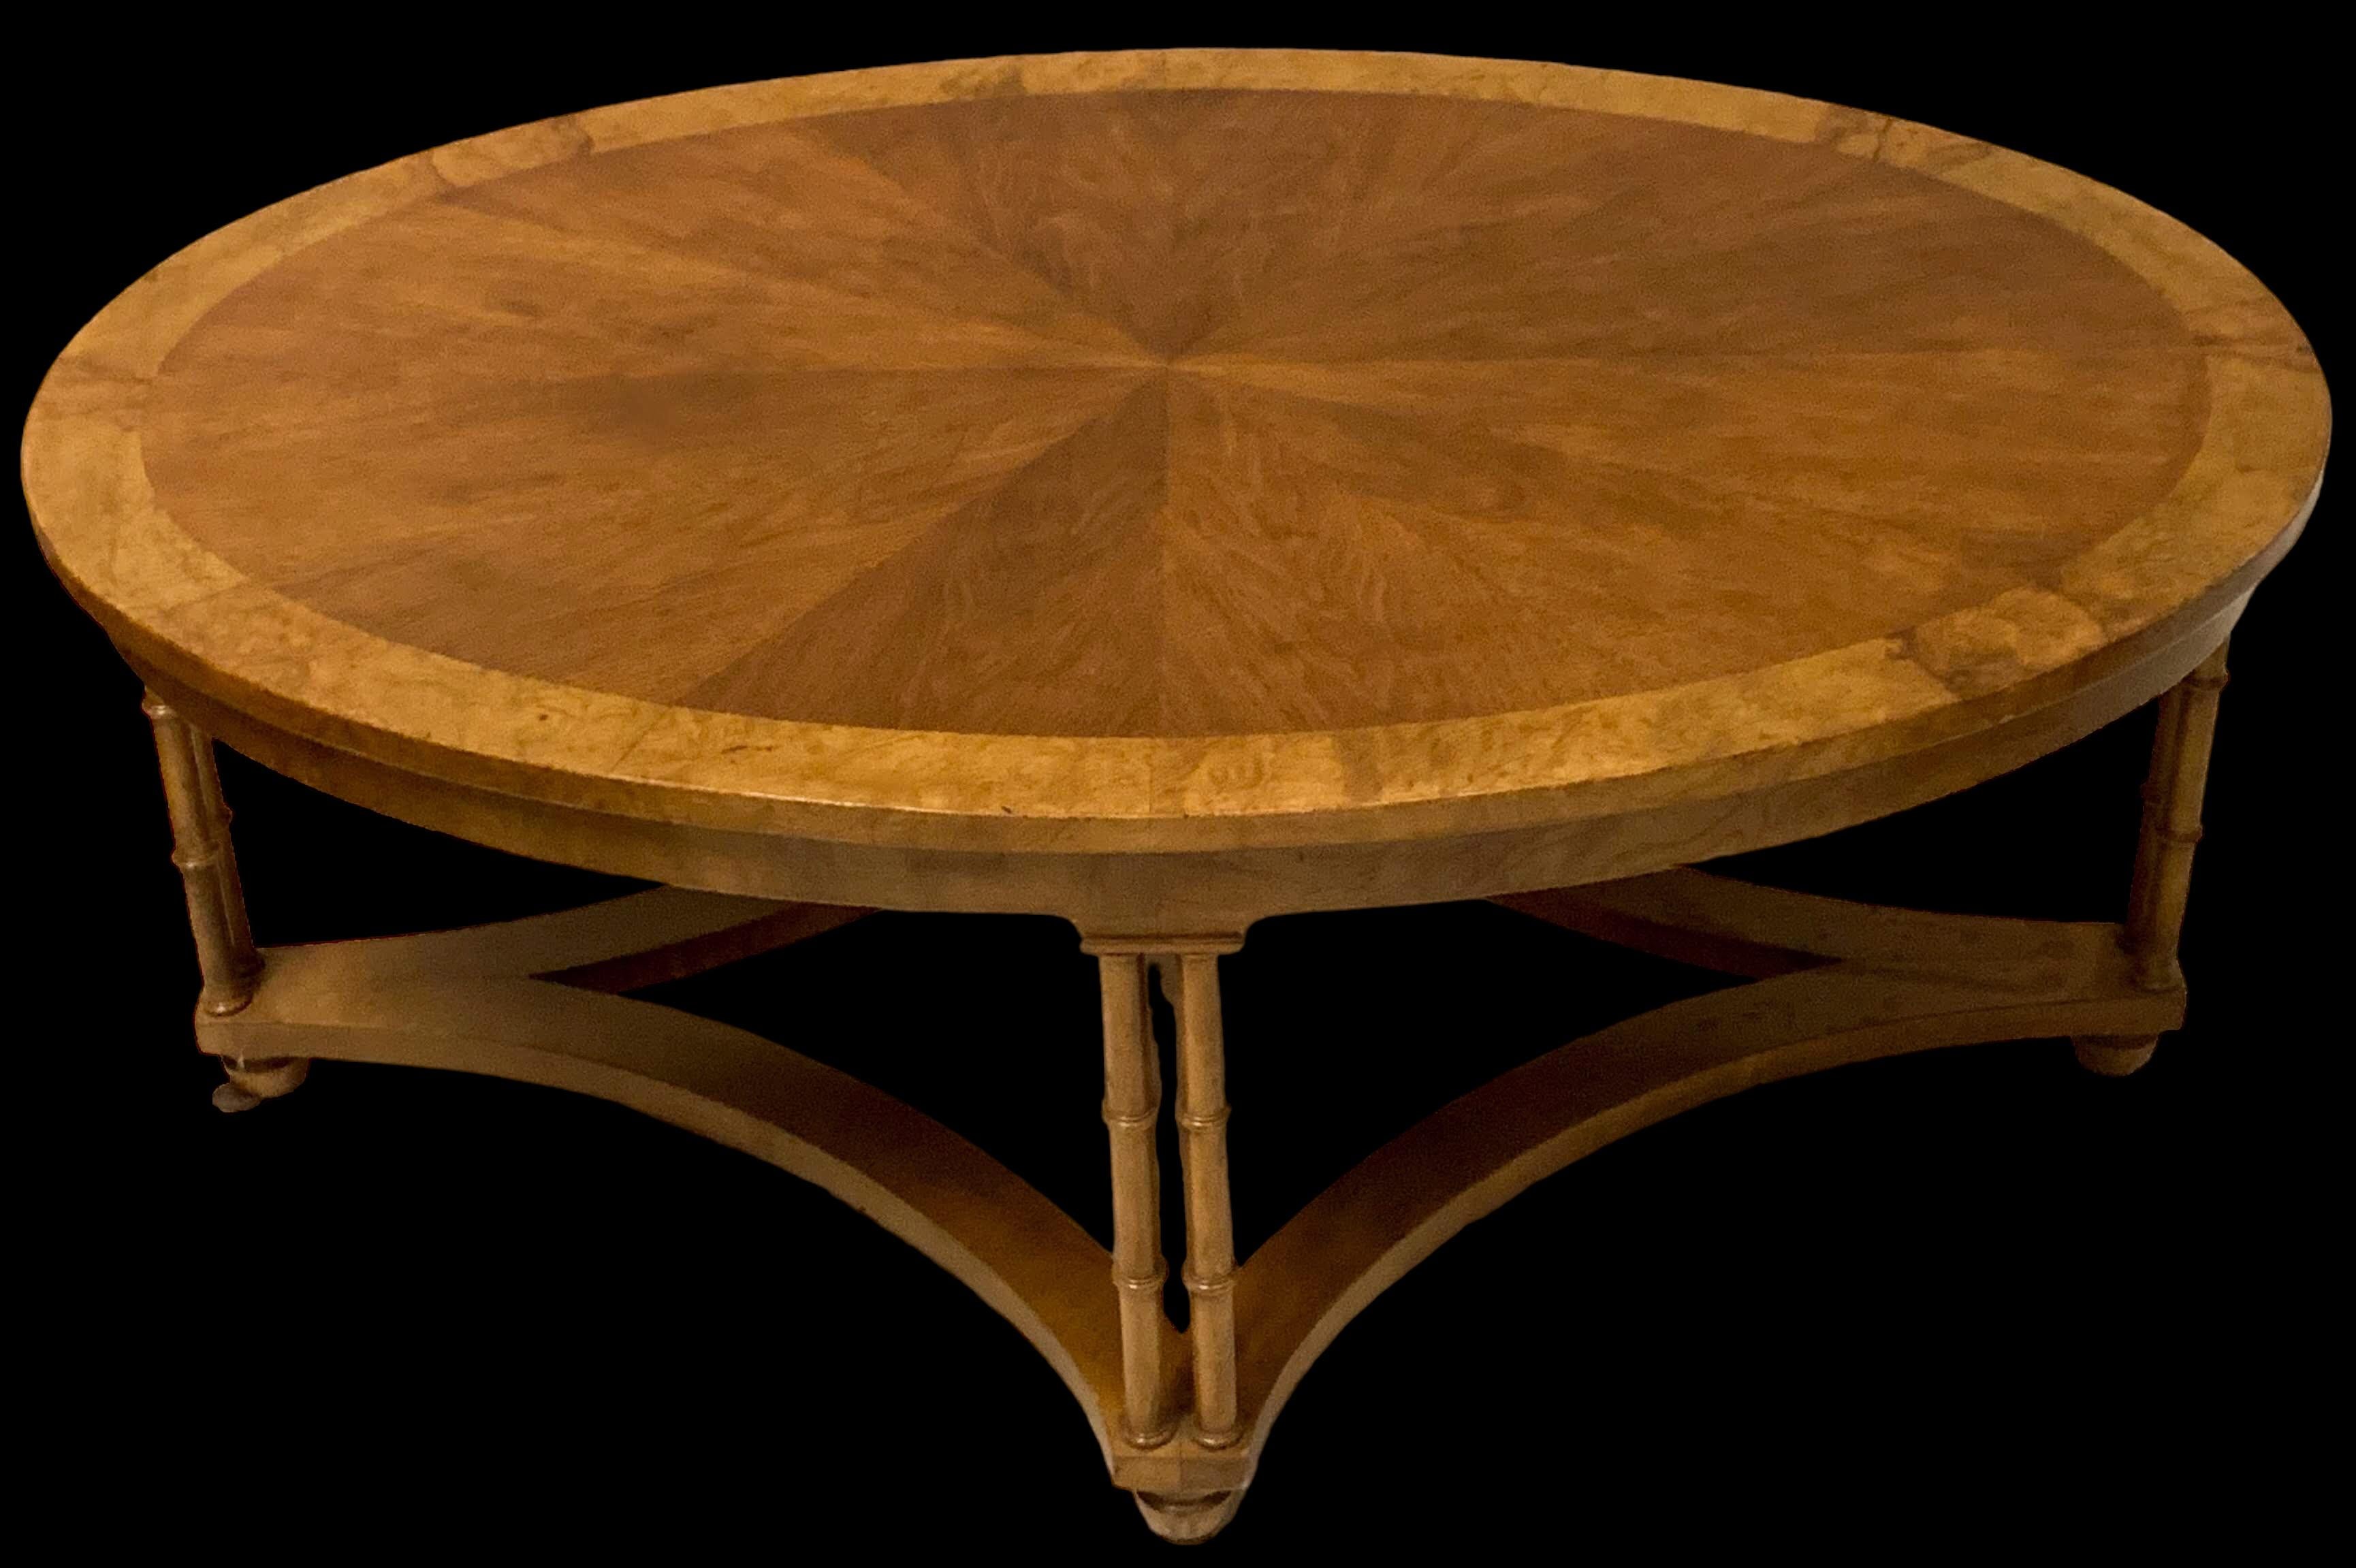 Il s'agit d'une table basse de style régence en ronce de noyer et faux bambou de Baker Furniture. Il est en très bon état. Les pieds en faux bambou lui confèrent un attrait intemporel.